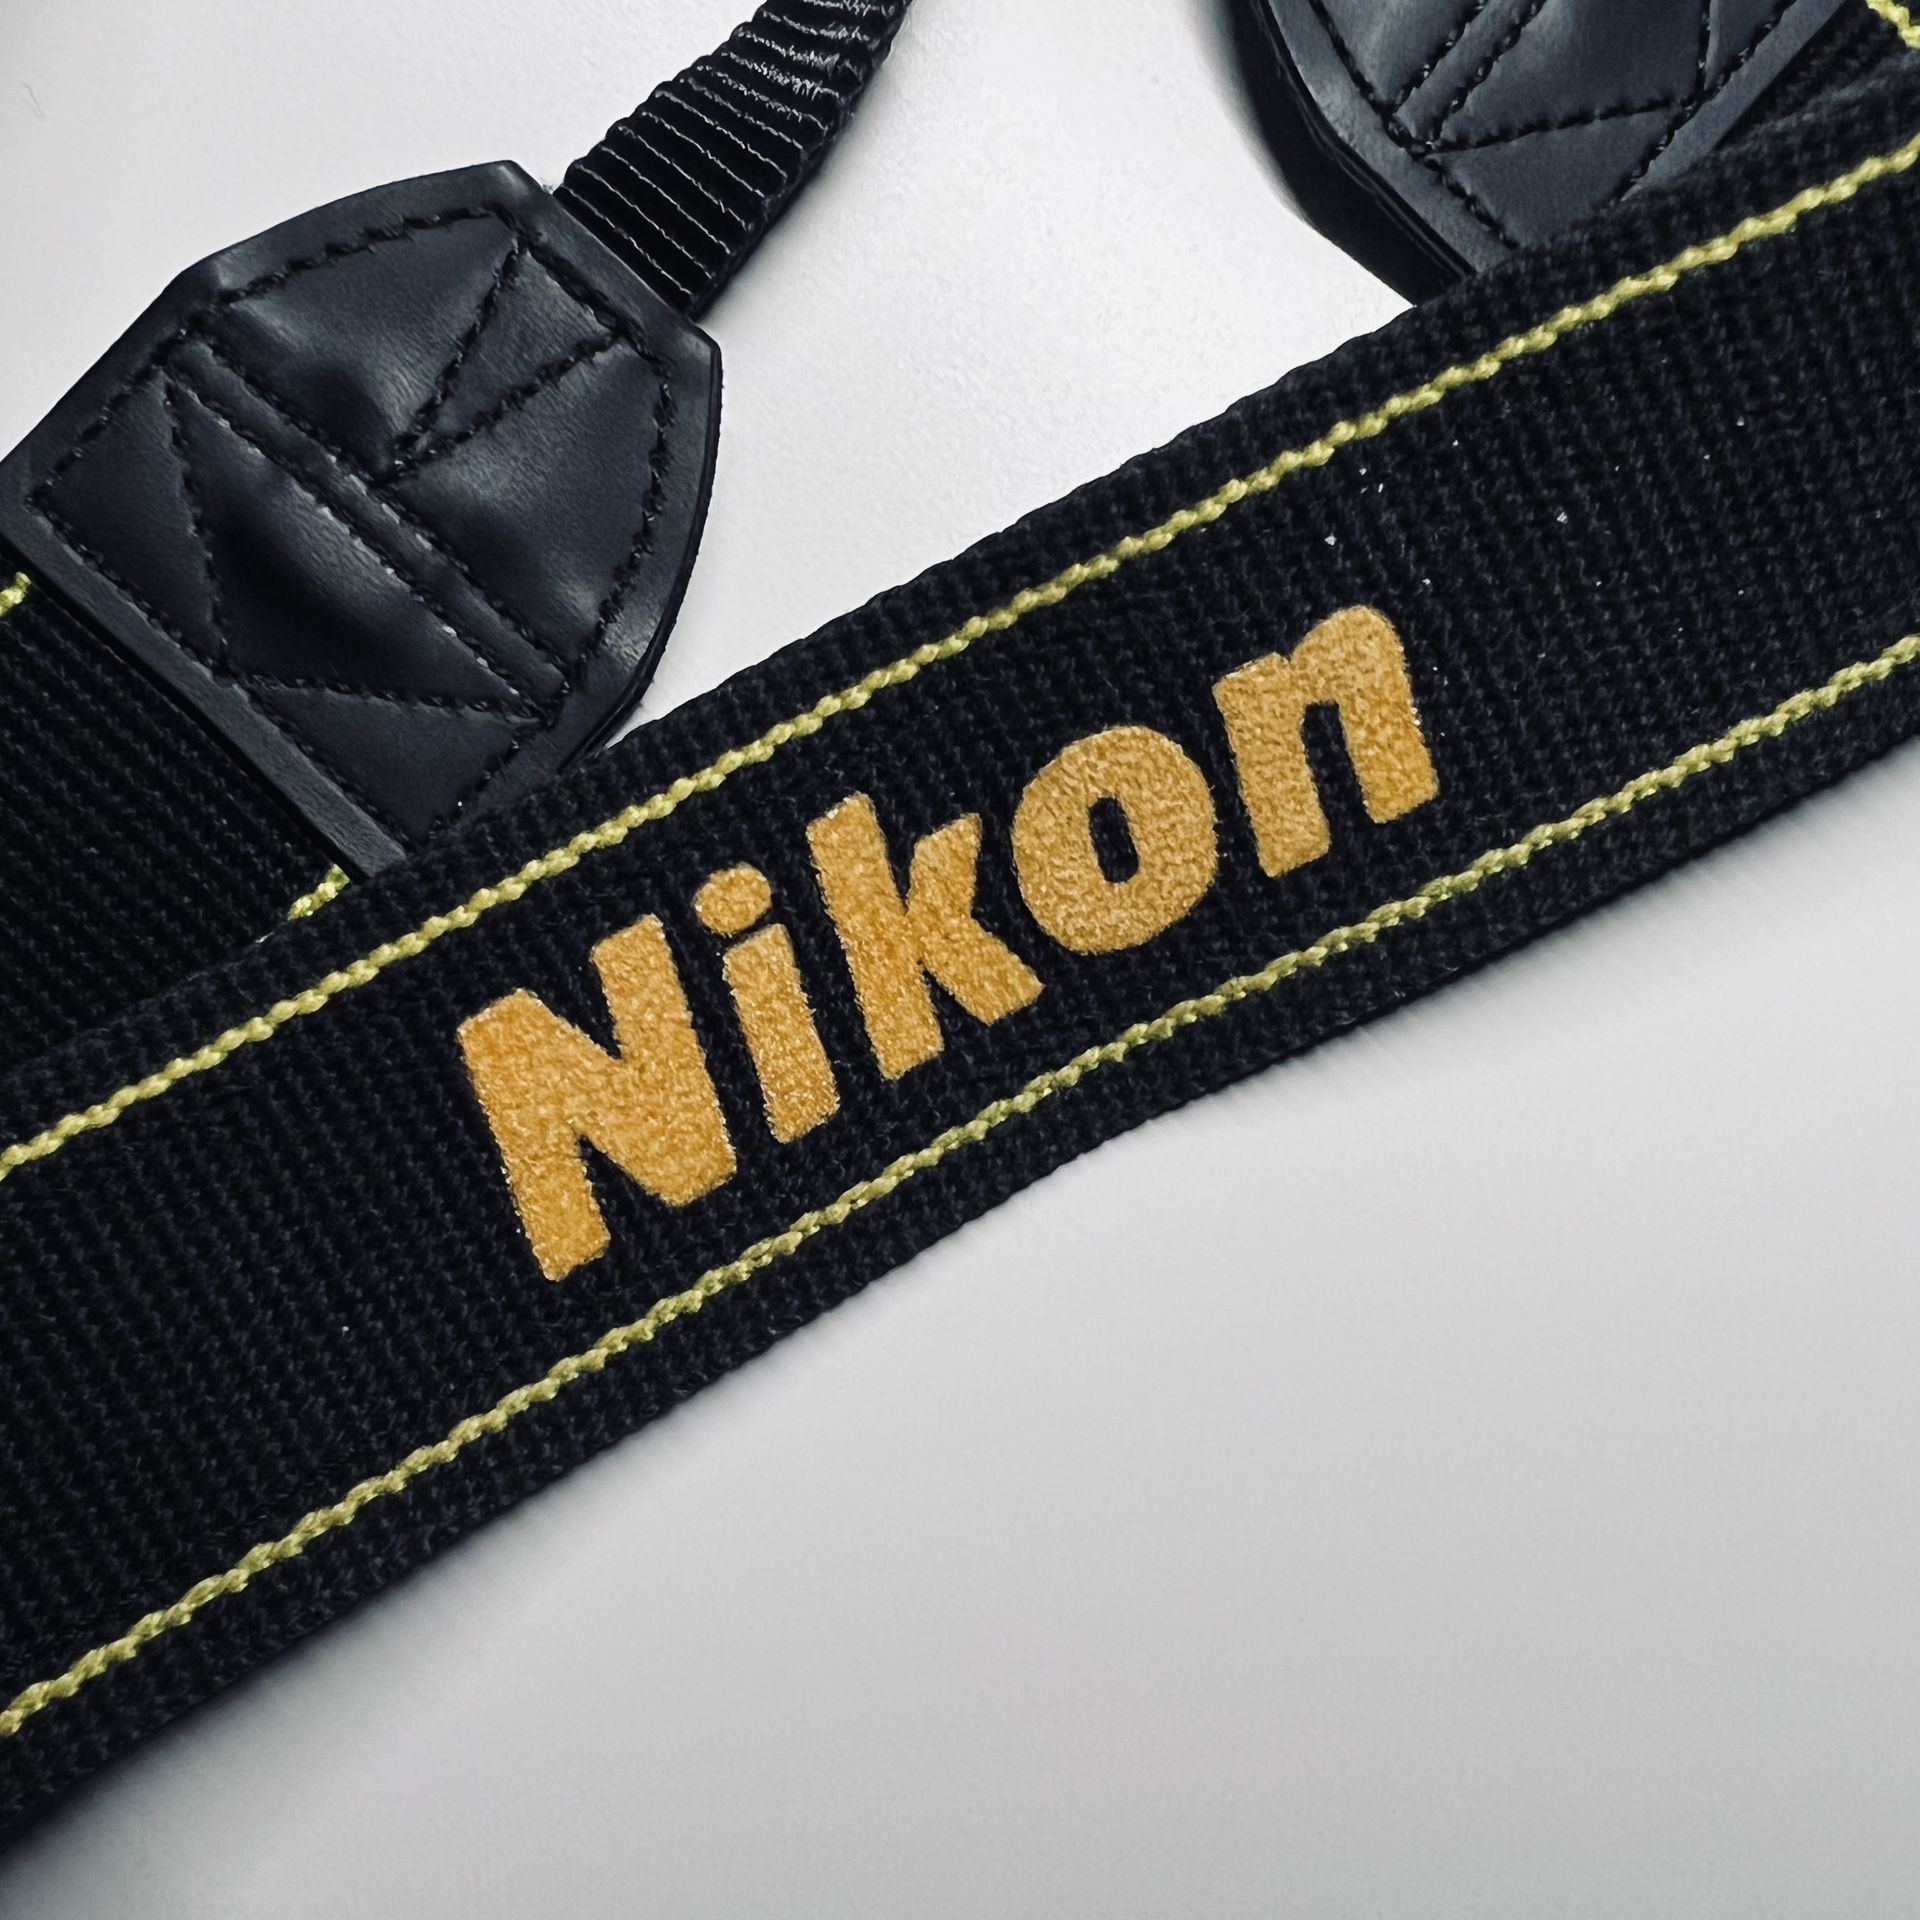 Nikon D7100 Body, Strap, And Four Lenses